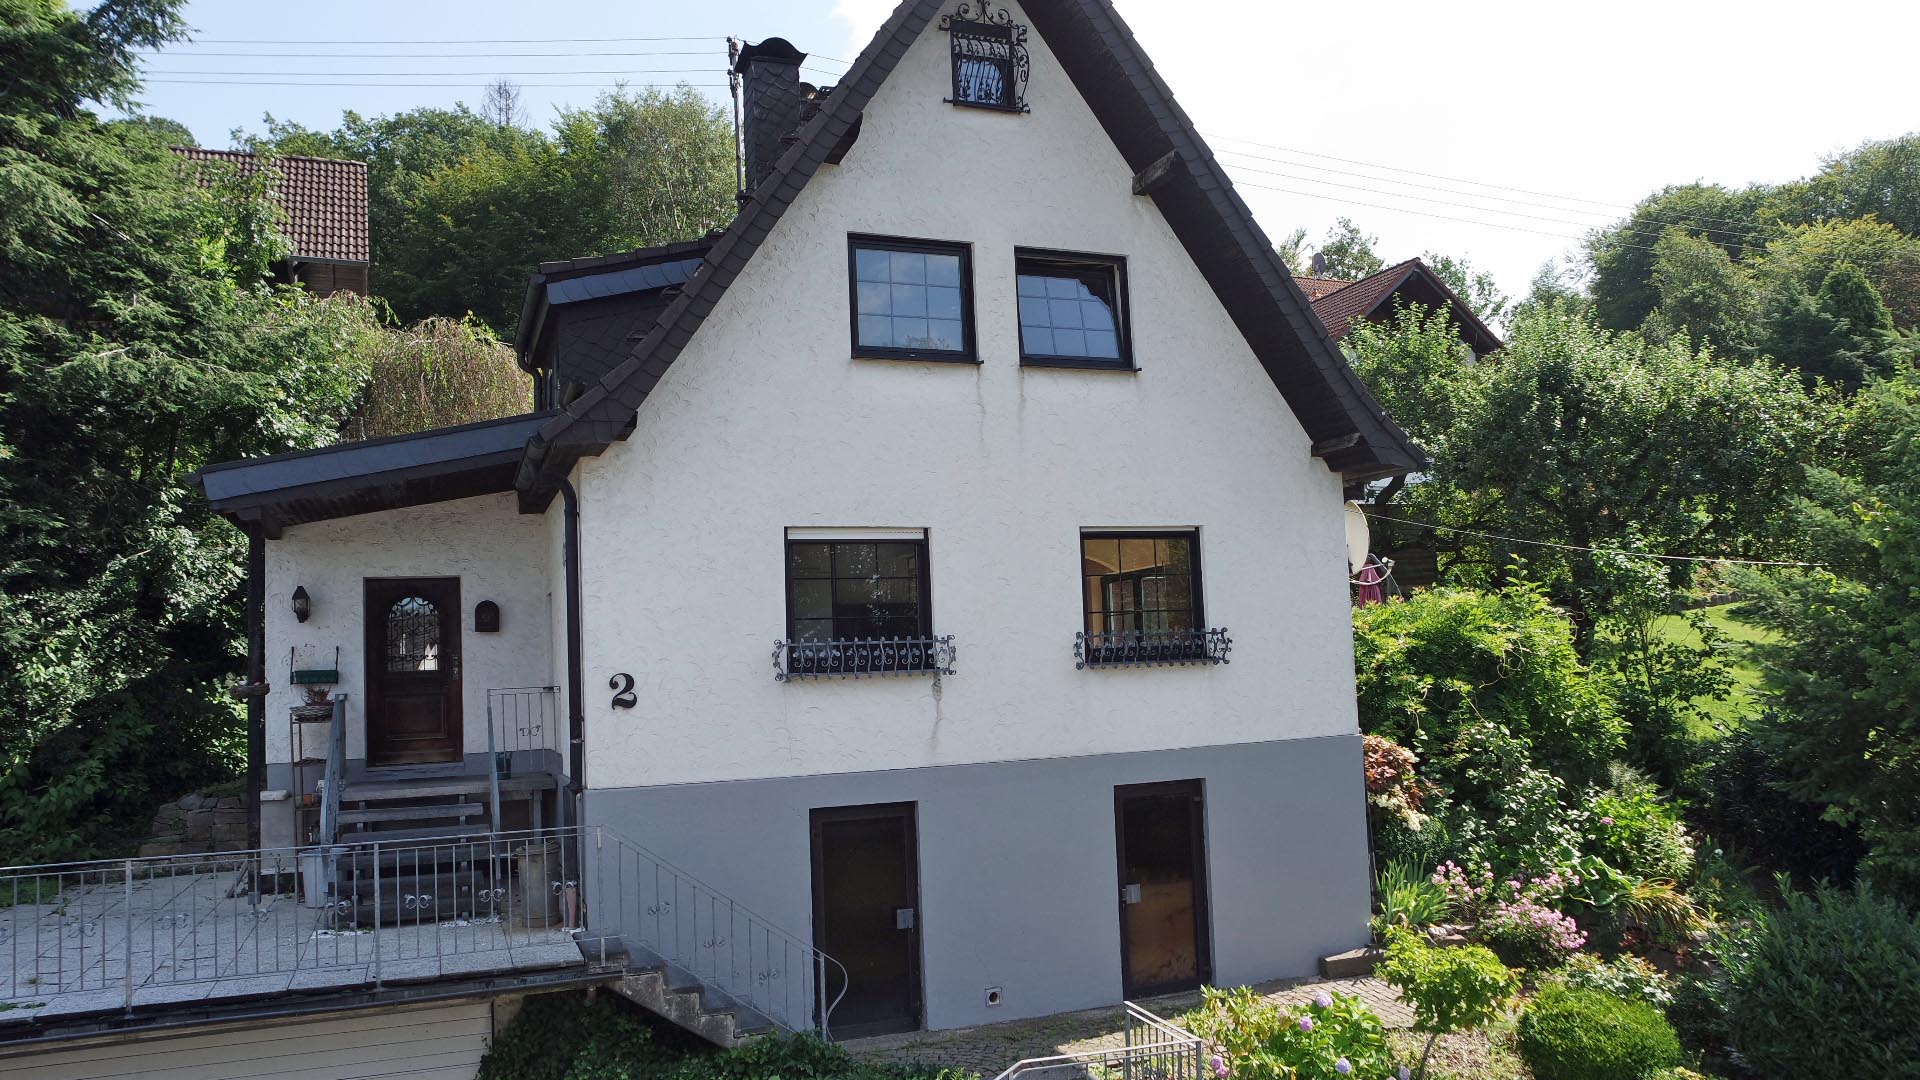 Reichshof-Nosbach: Achtung Naturliebhaber, massives kleines Wohnhaus, Frontseite mit Keller, Garage und Terrasse darauf